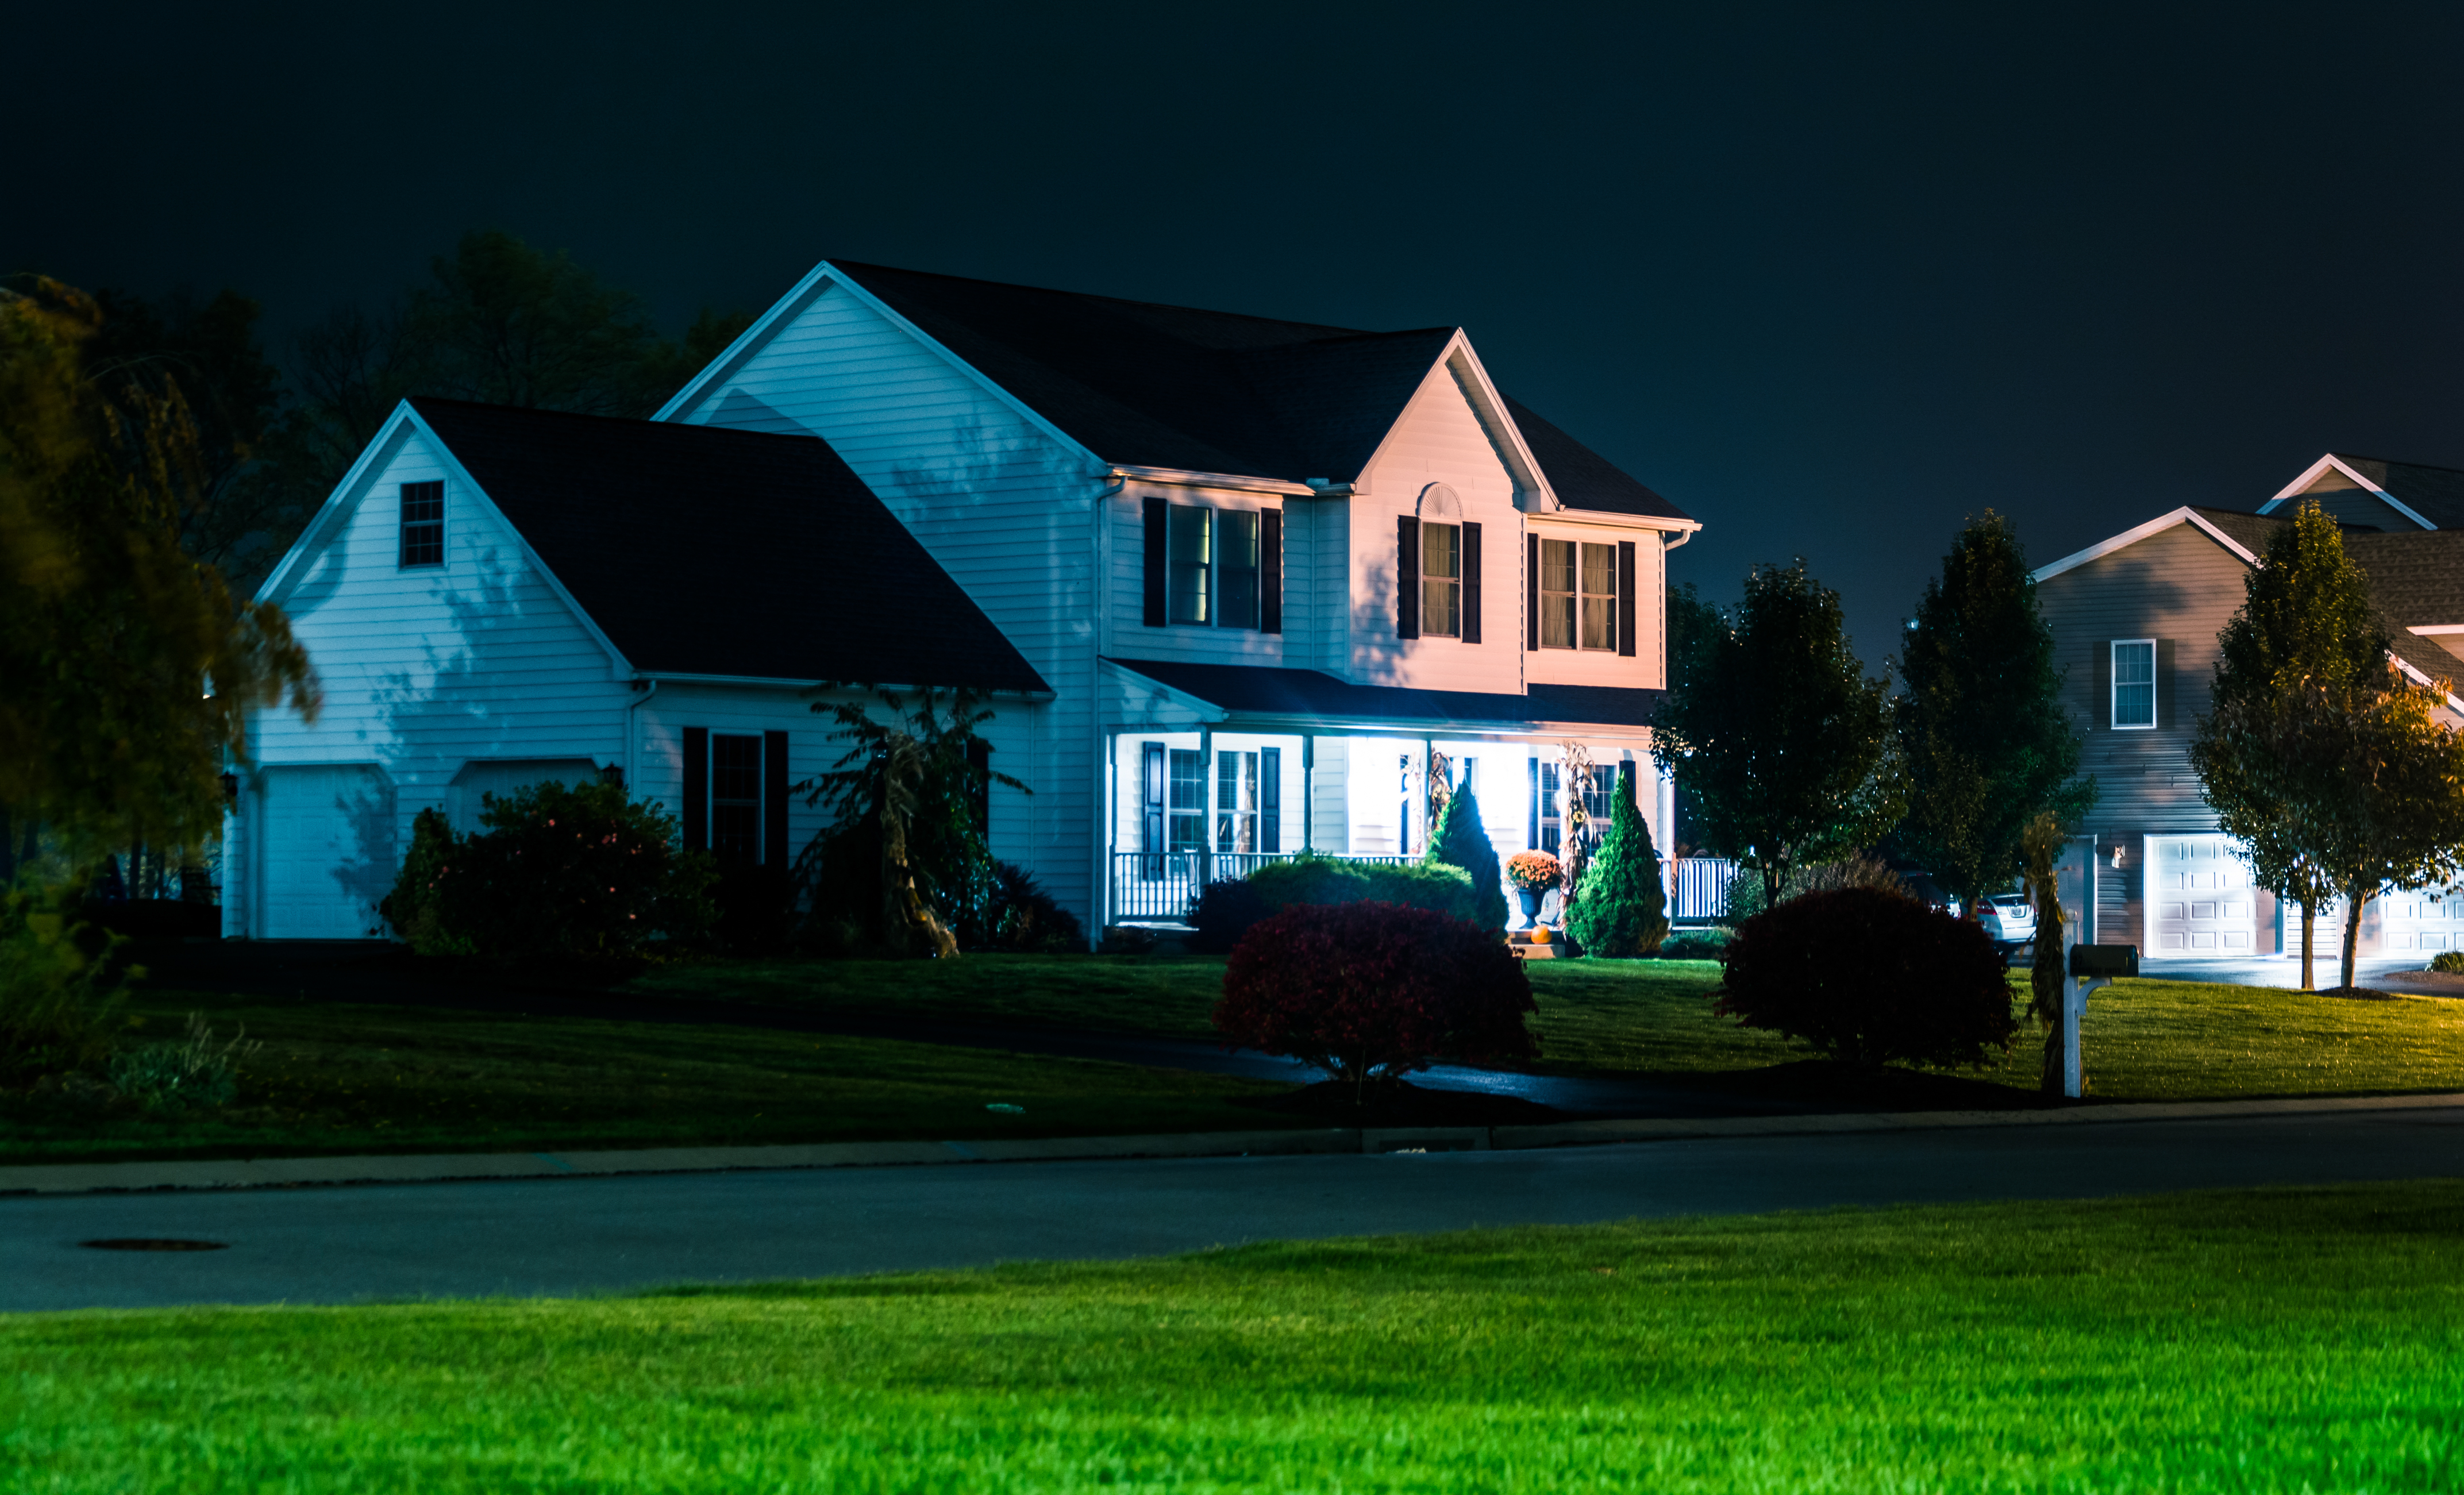 Casa de noche | Foto: Shutterstock